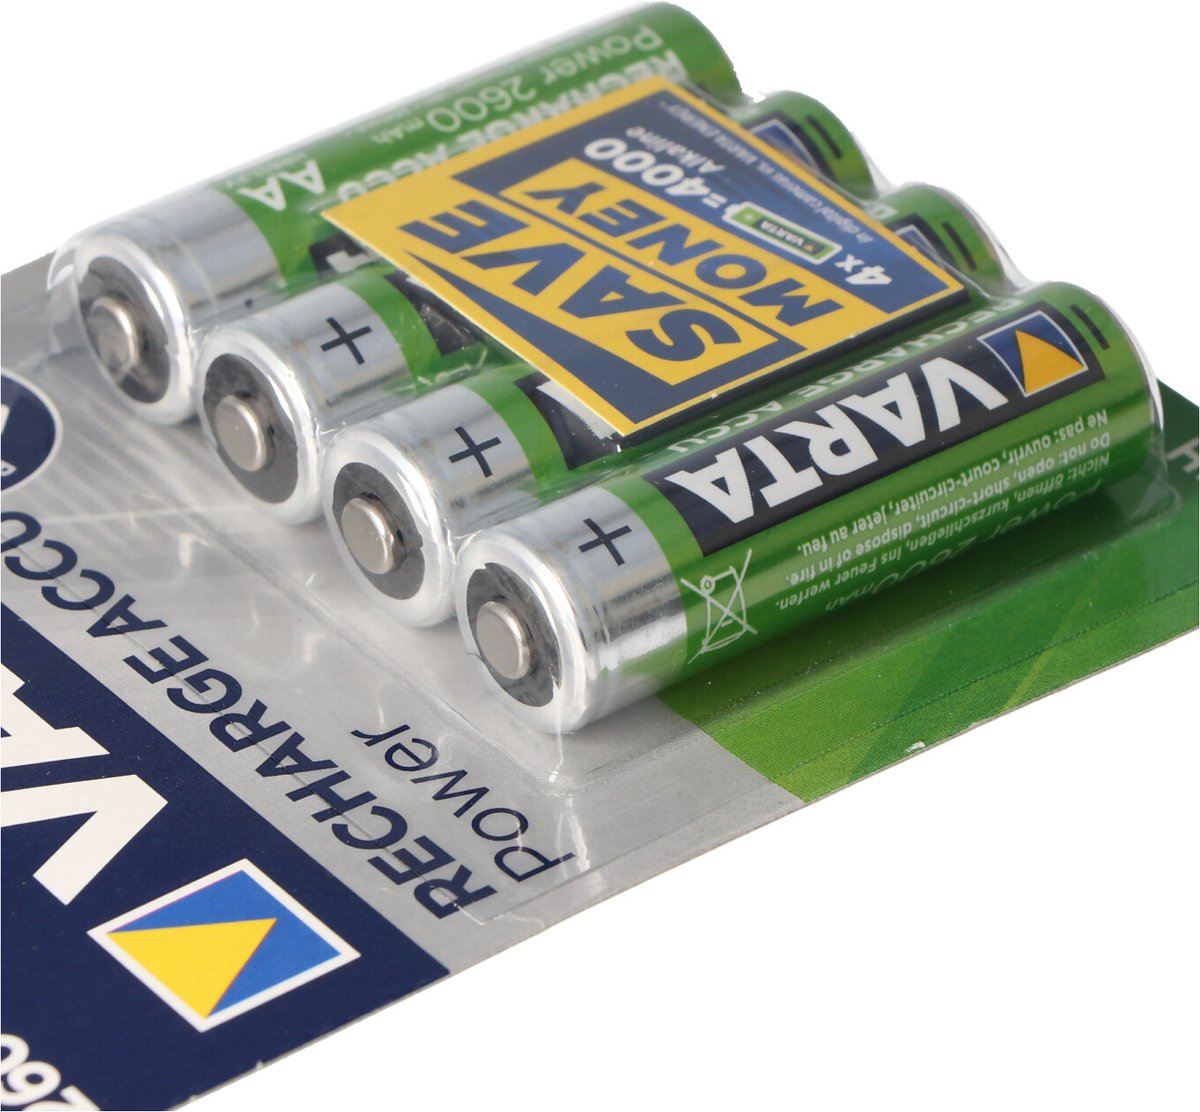 Piles rechargeables VARTA LR06 AA 2100 mAH 5+1 gratuite Varta